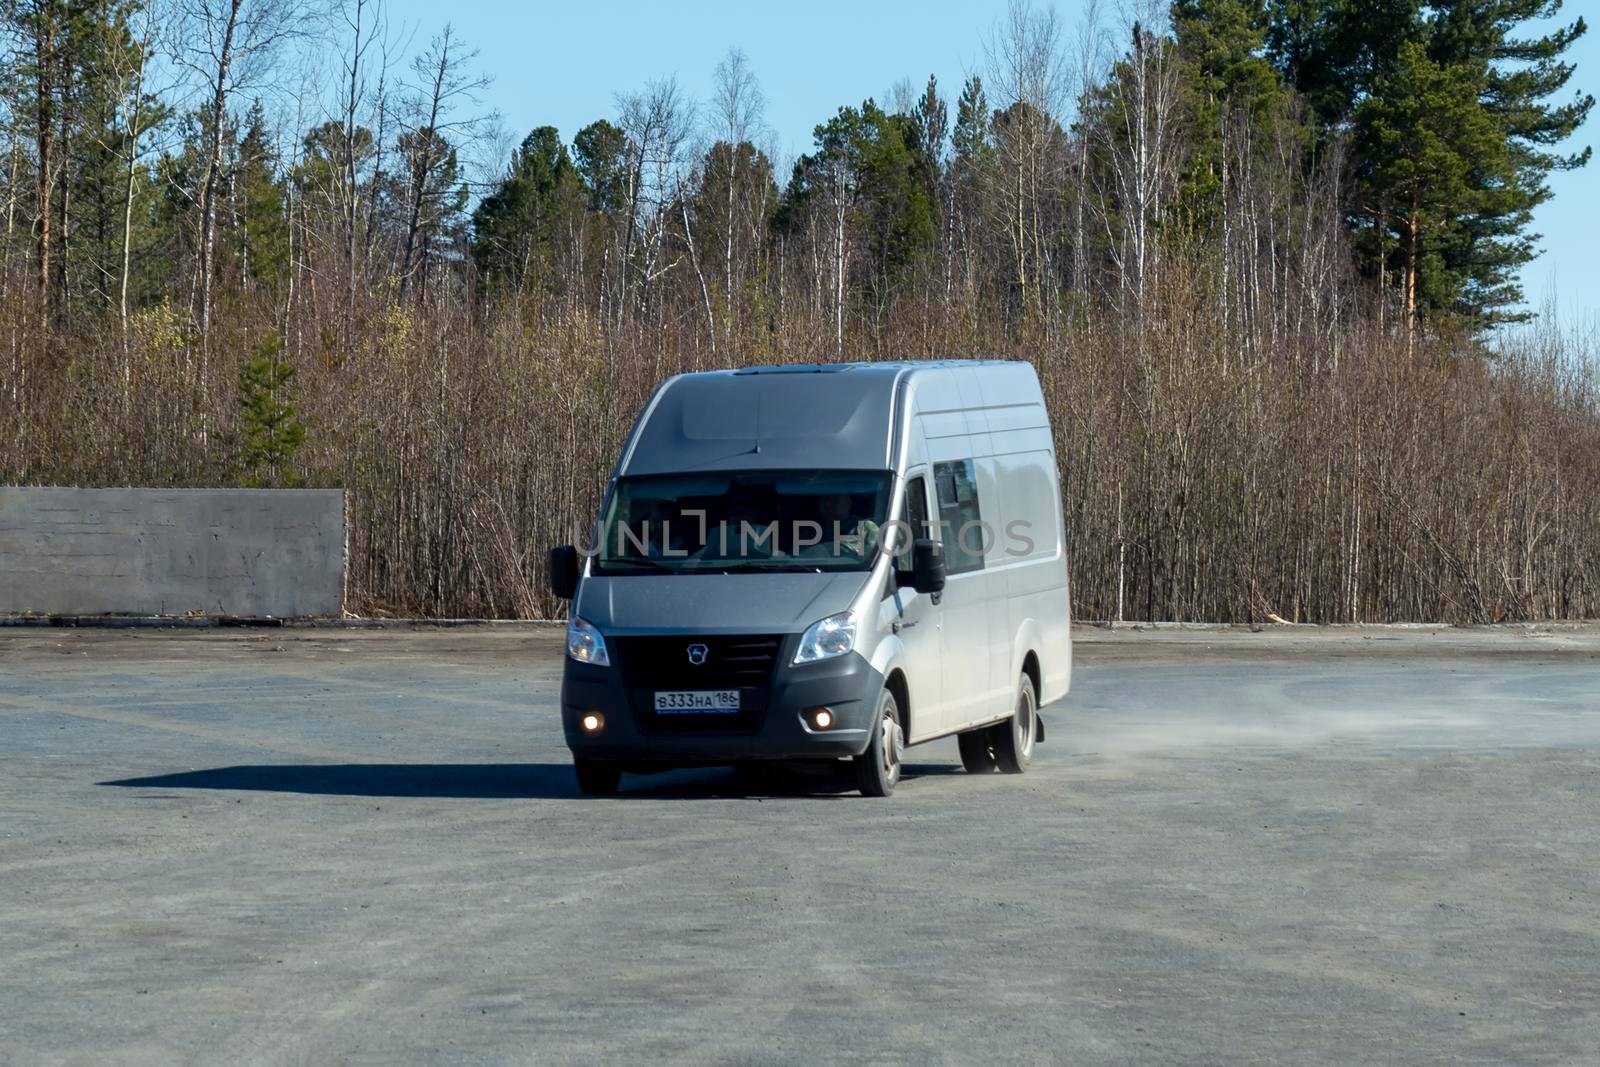 A grey van enters a parking lot near road. Surgut, Russia - 16 April 2021 by Essffes